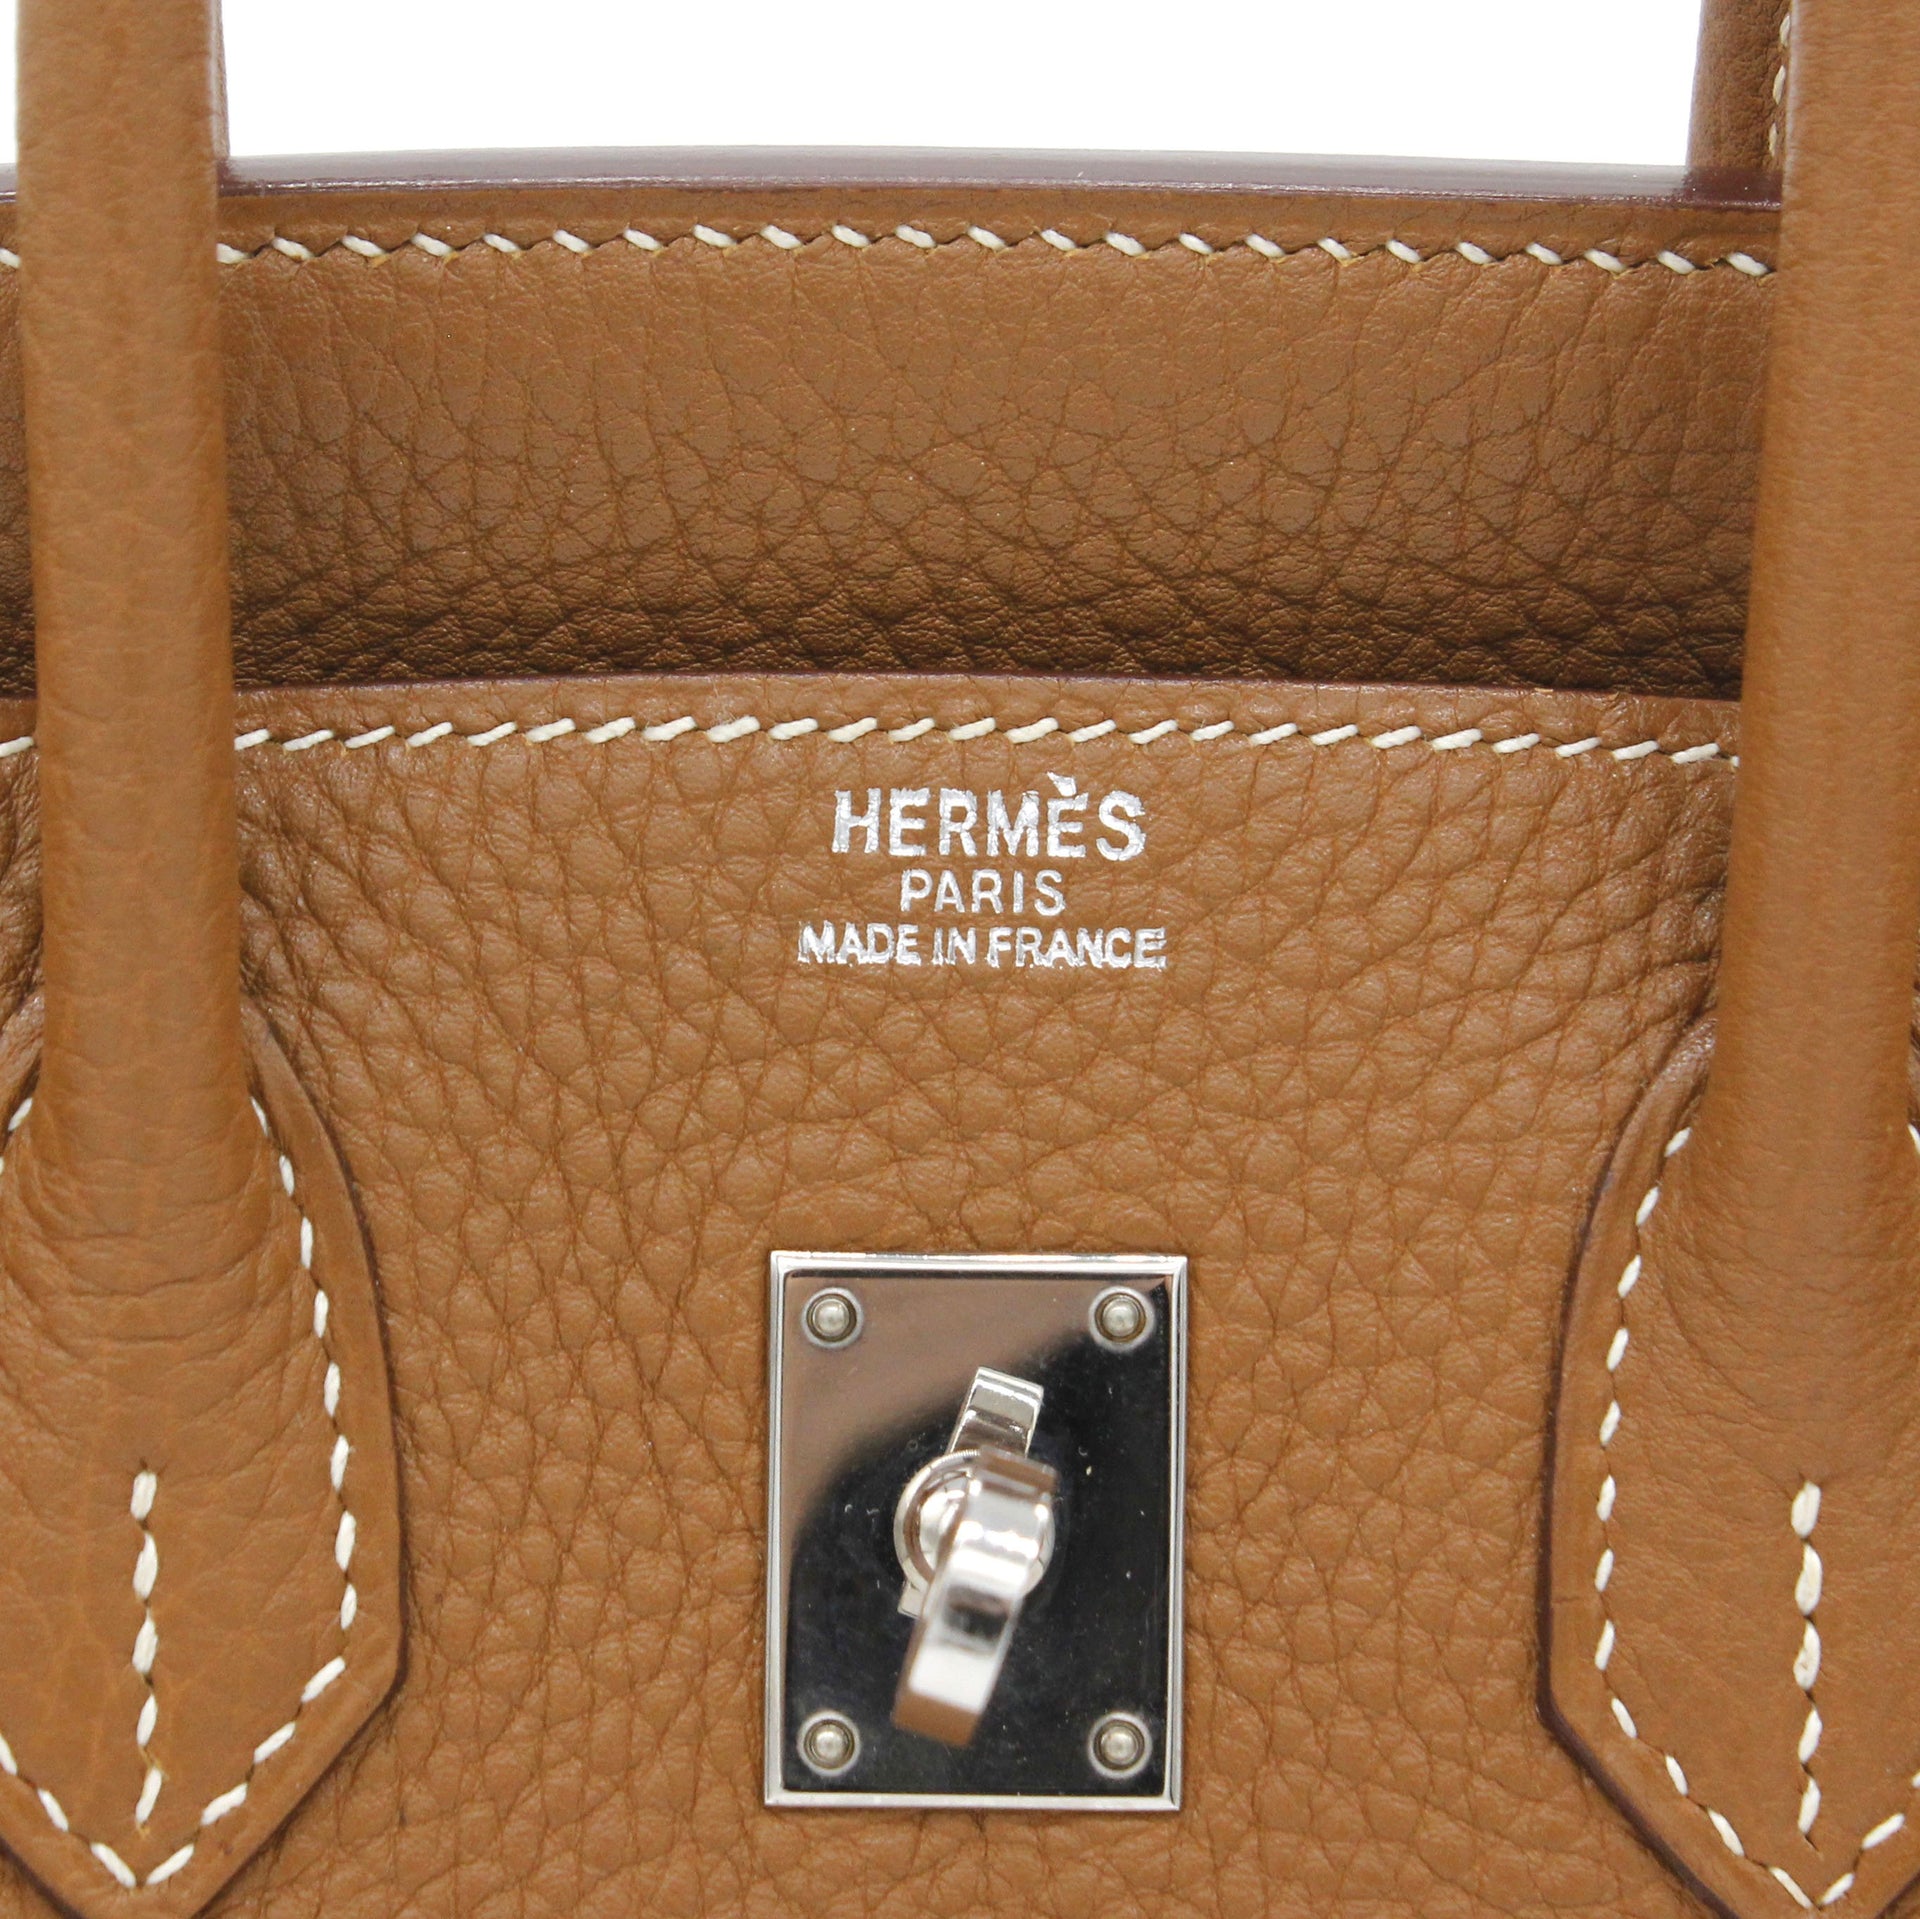 Hermes Gold Brown Togo Gold Hardware Birkin 25 Handbag Bag Tote